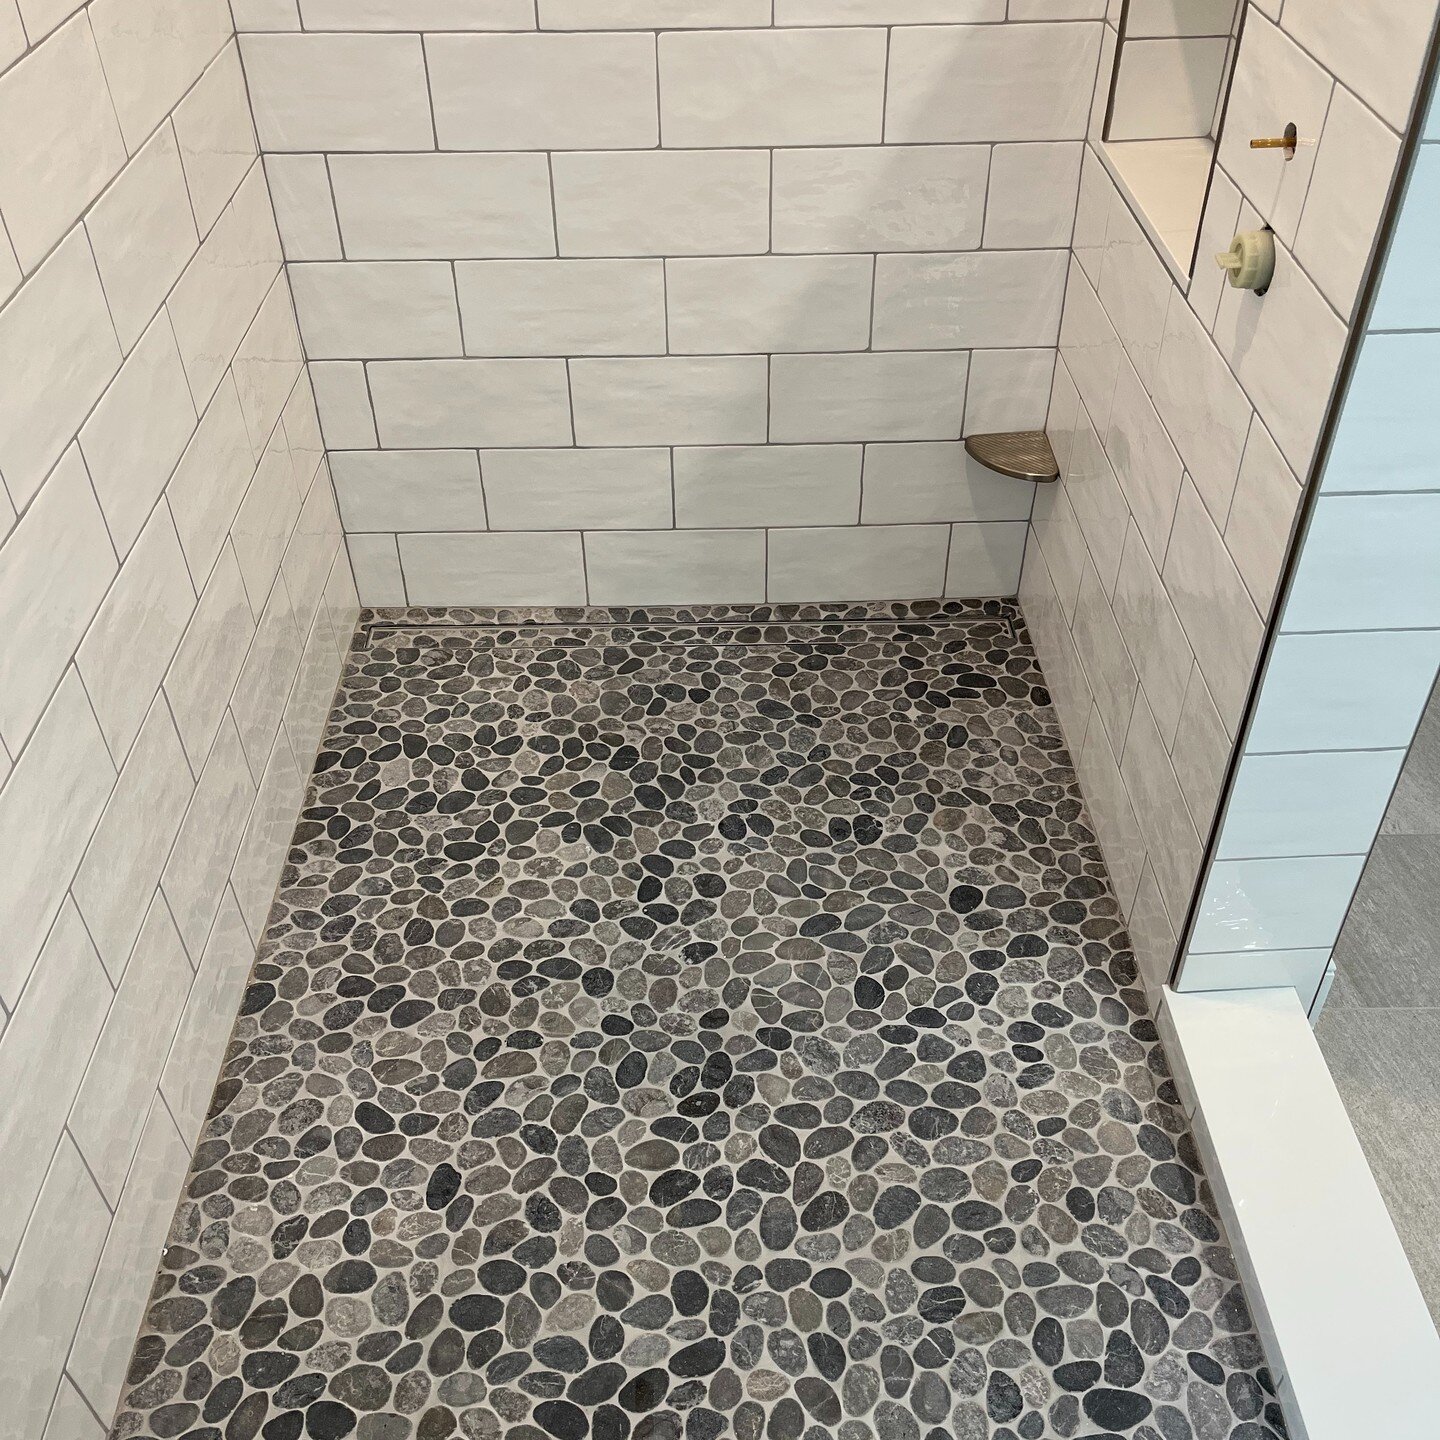 Loving this tiled shower! #niantic #eastlyme #oldlyme #remodeling #home #renovations #homeimprovement #bathroom #bathroomdesign #bathroomremodel #tile #tiledesign #tilestyle